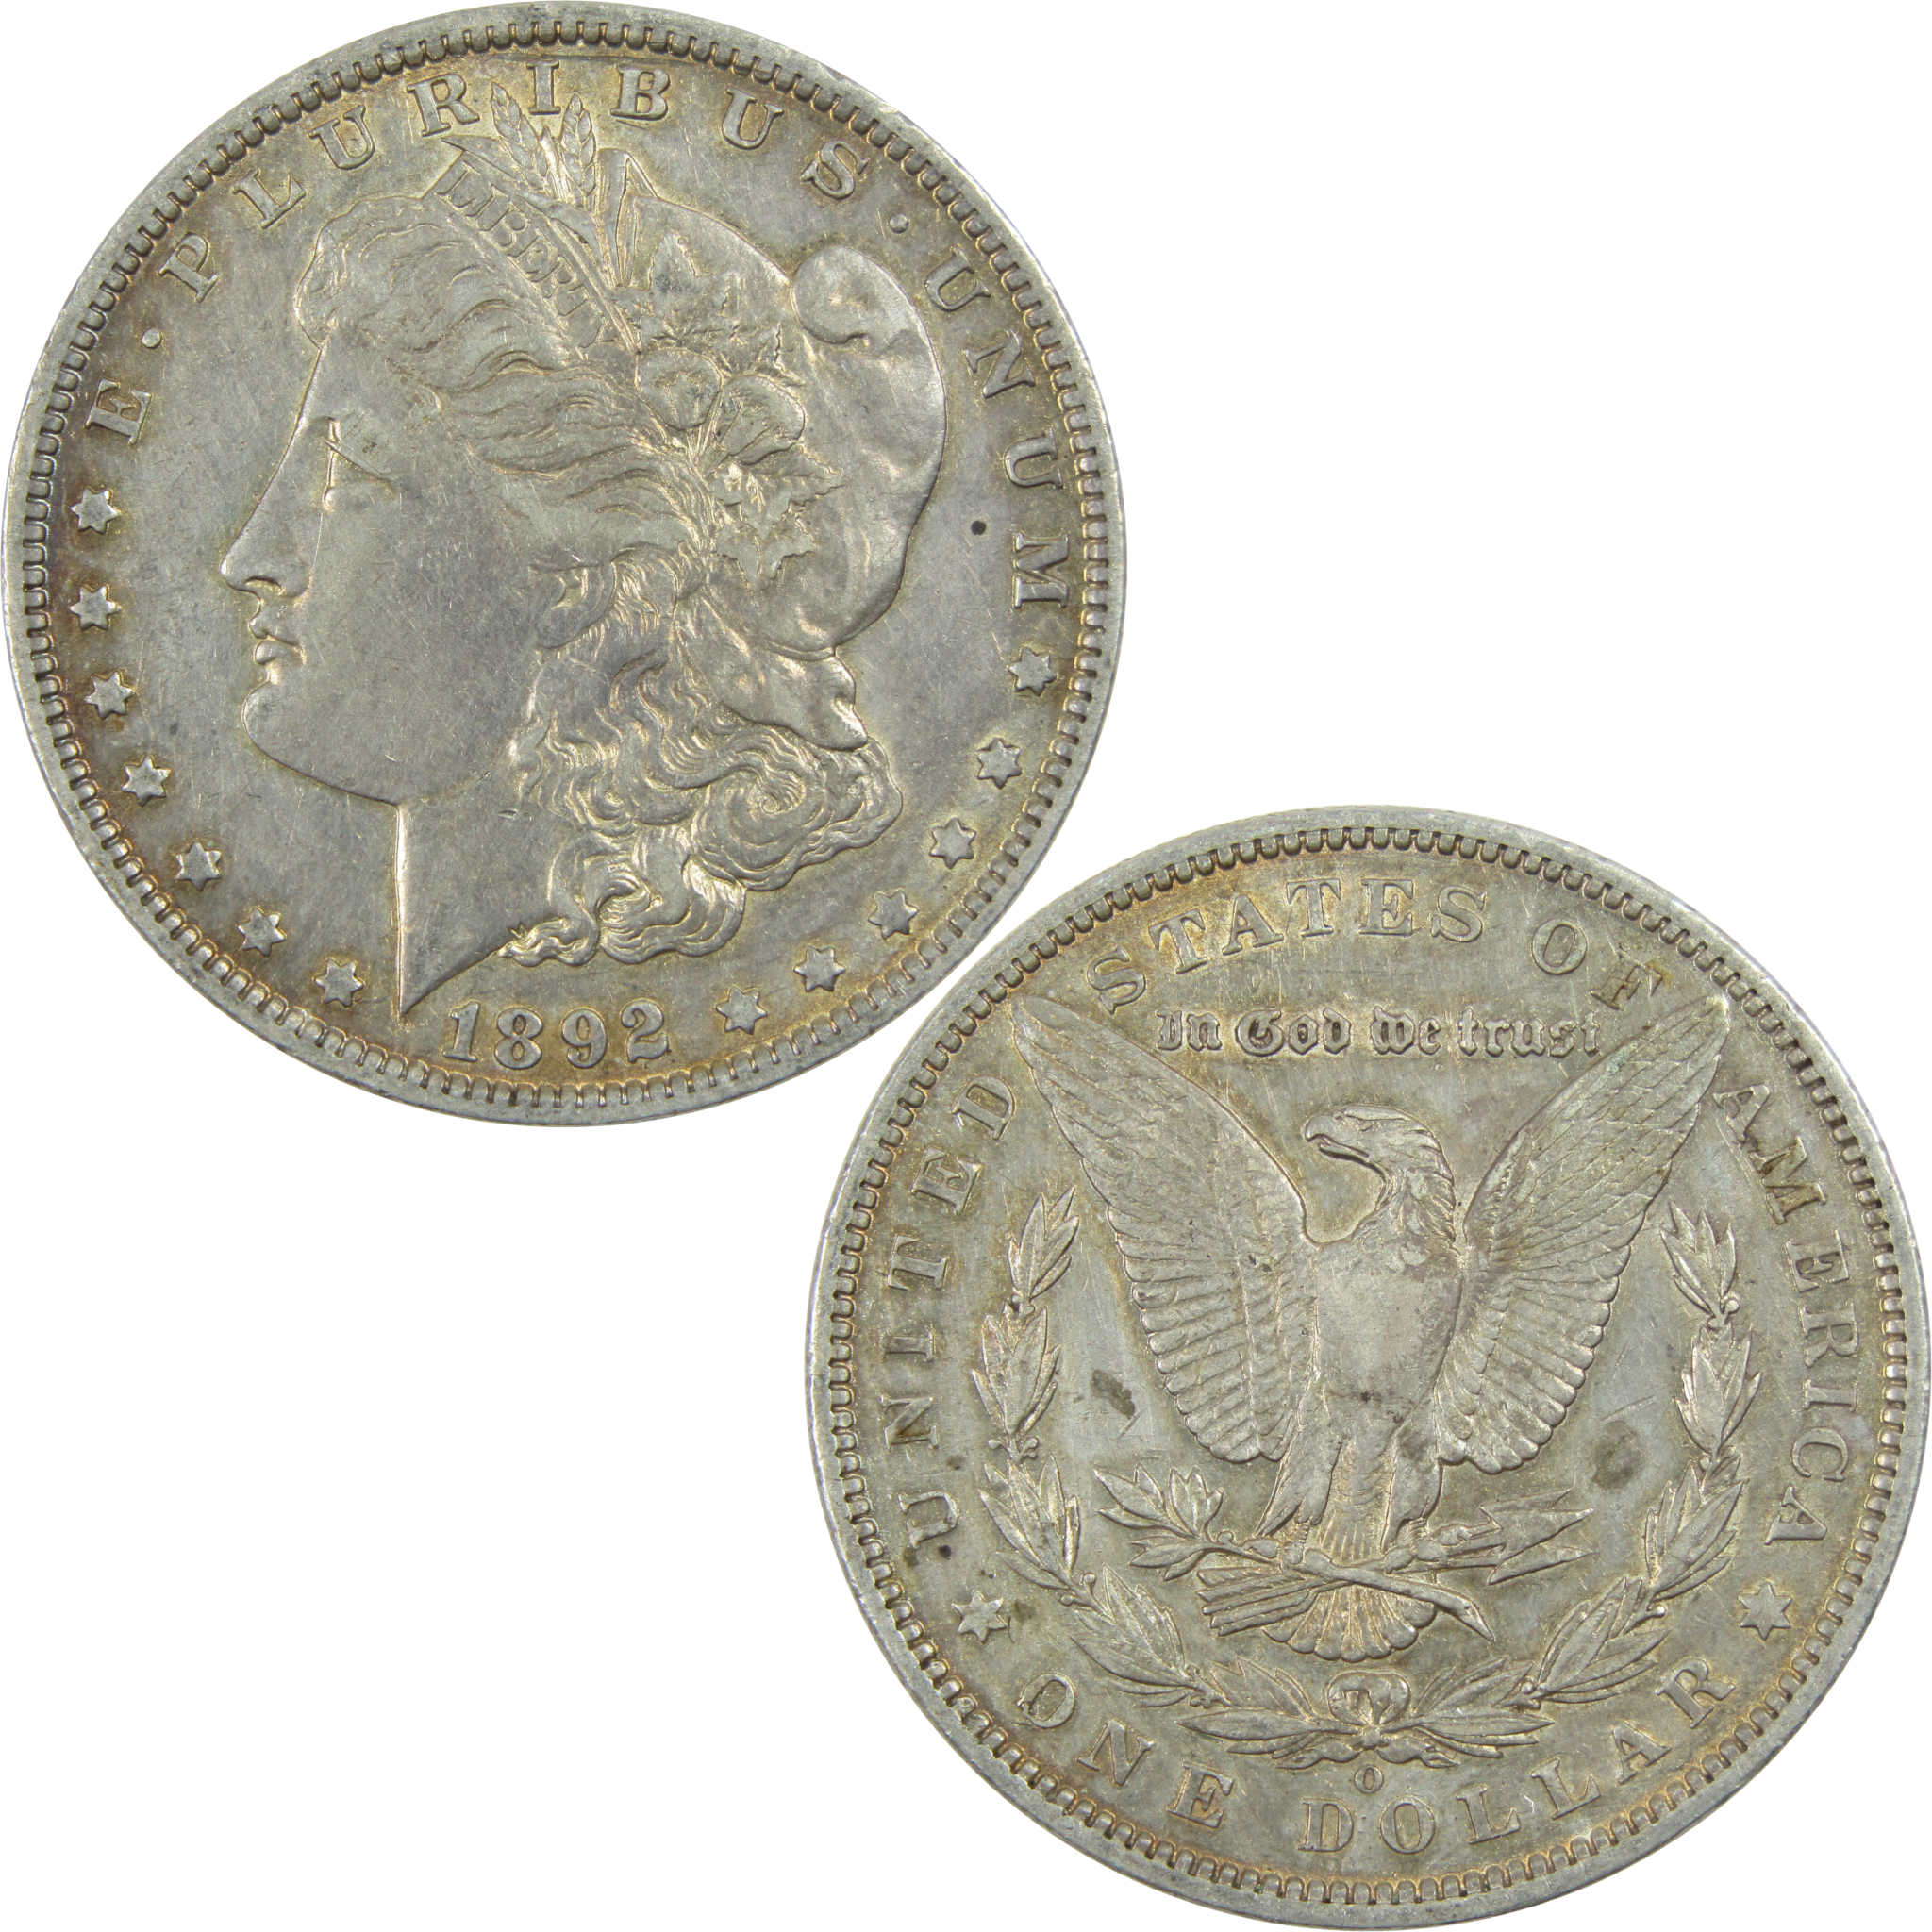 1892 O Morgan Dollar XF EF Extremely Fine Details Silver $1 SKU:I13352 - Morgan coin - Morgan silver dollar - Morgan silver dollar for sale - Profile Coins &amp; Collectibles